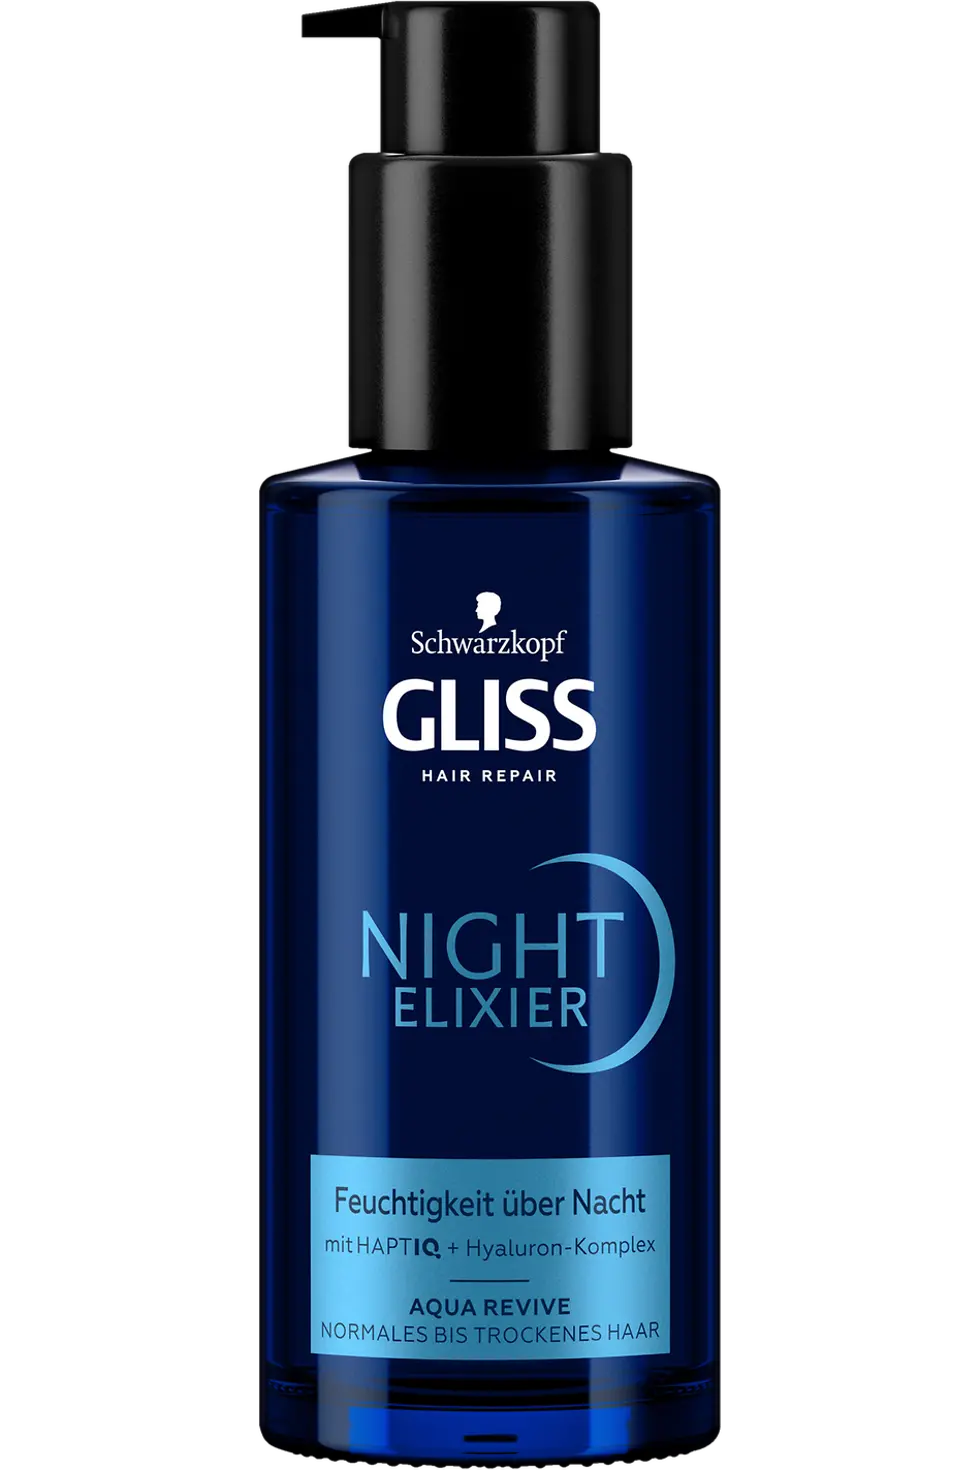 
Gliss Night Elixier AquaRevive Feuchtigkeit über Nacht